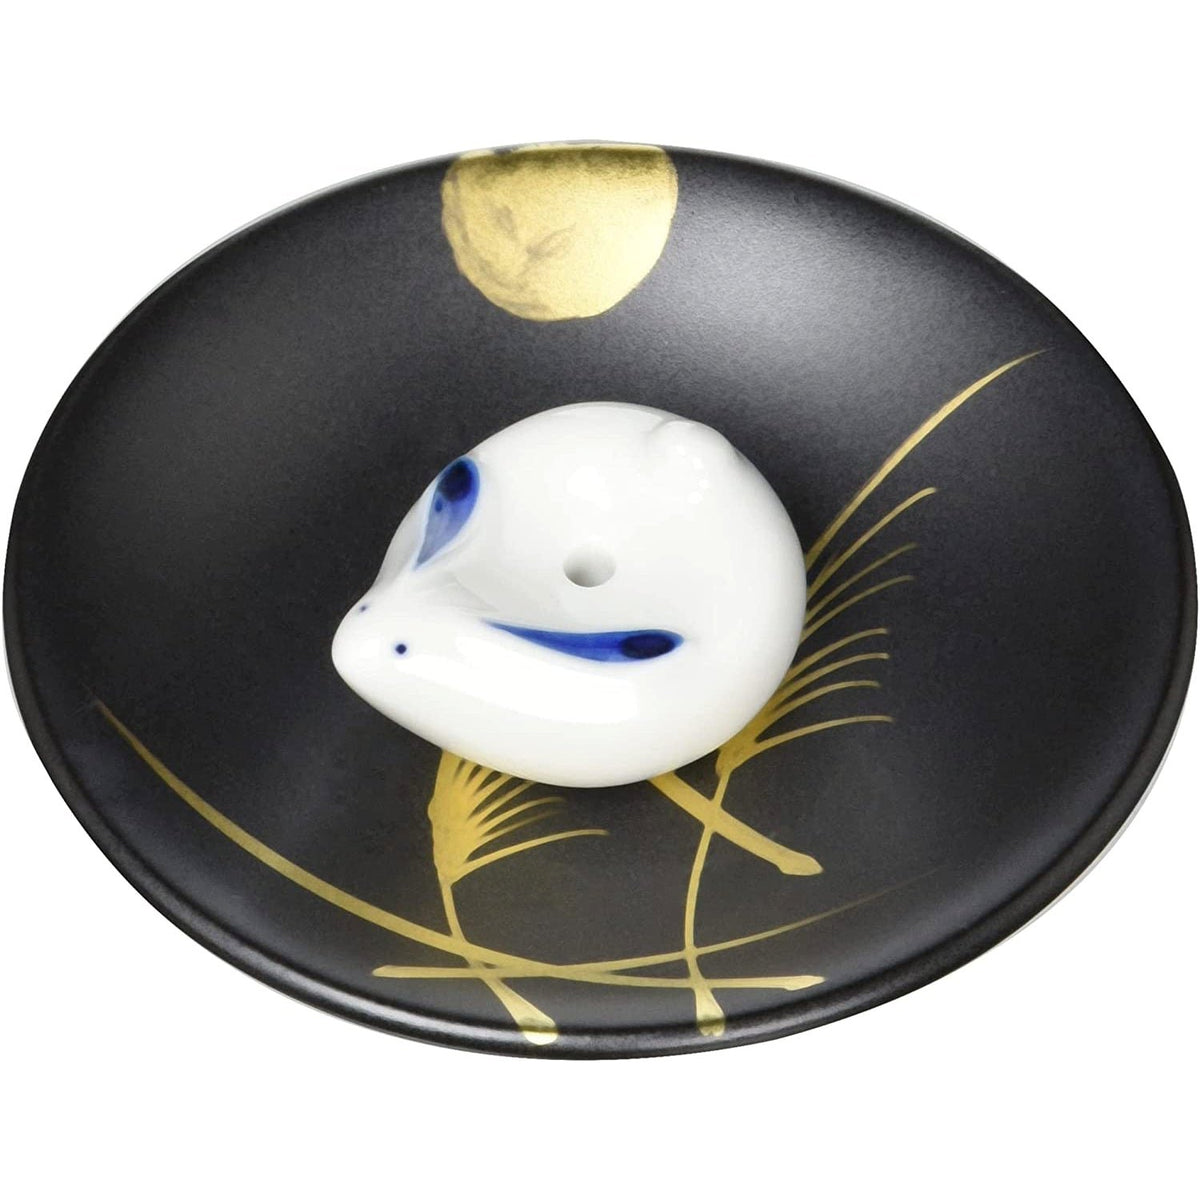 Rabbit Incense Holder, White Japanese Porcelain